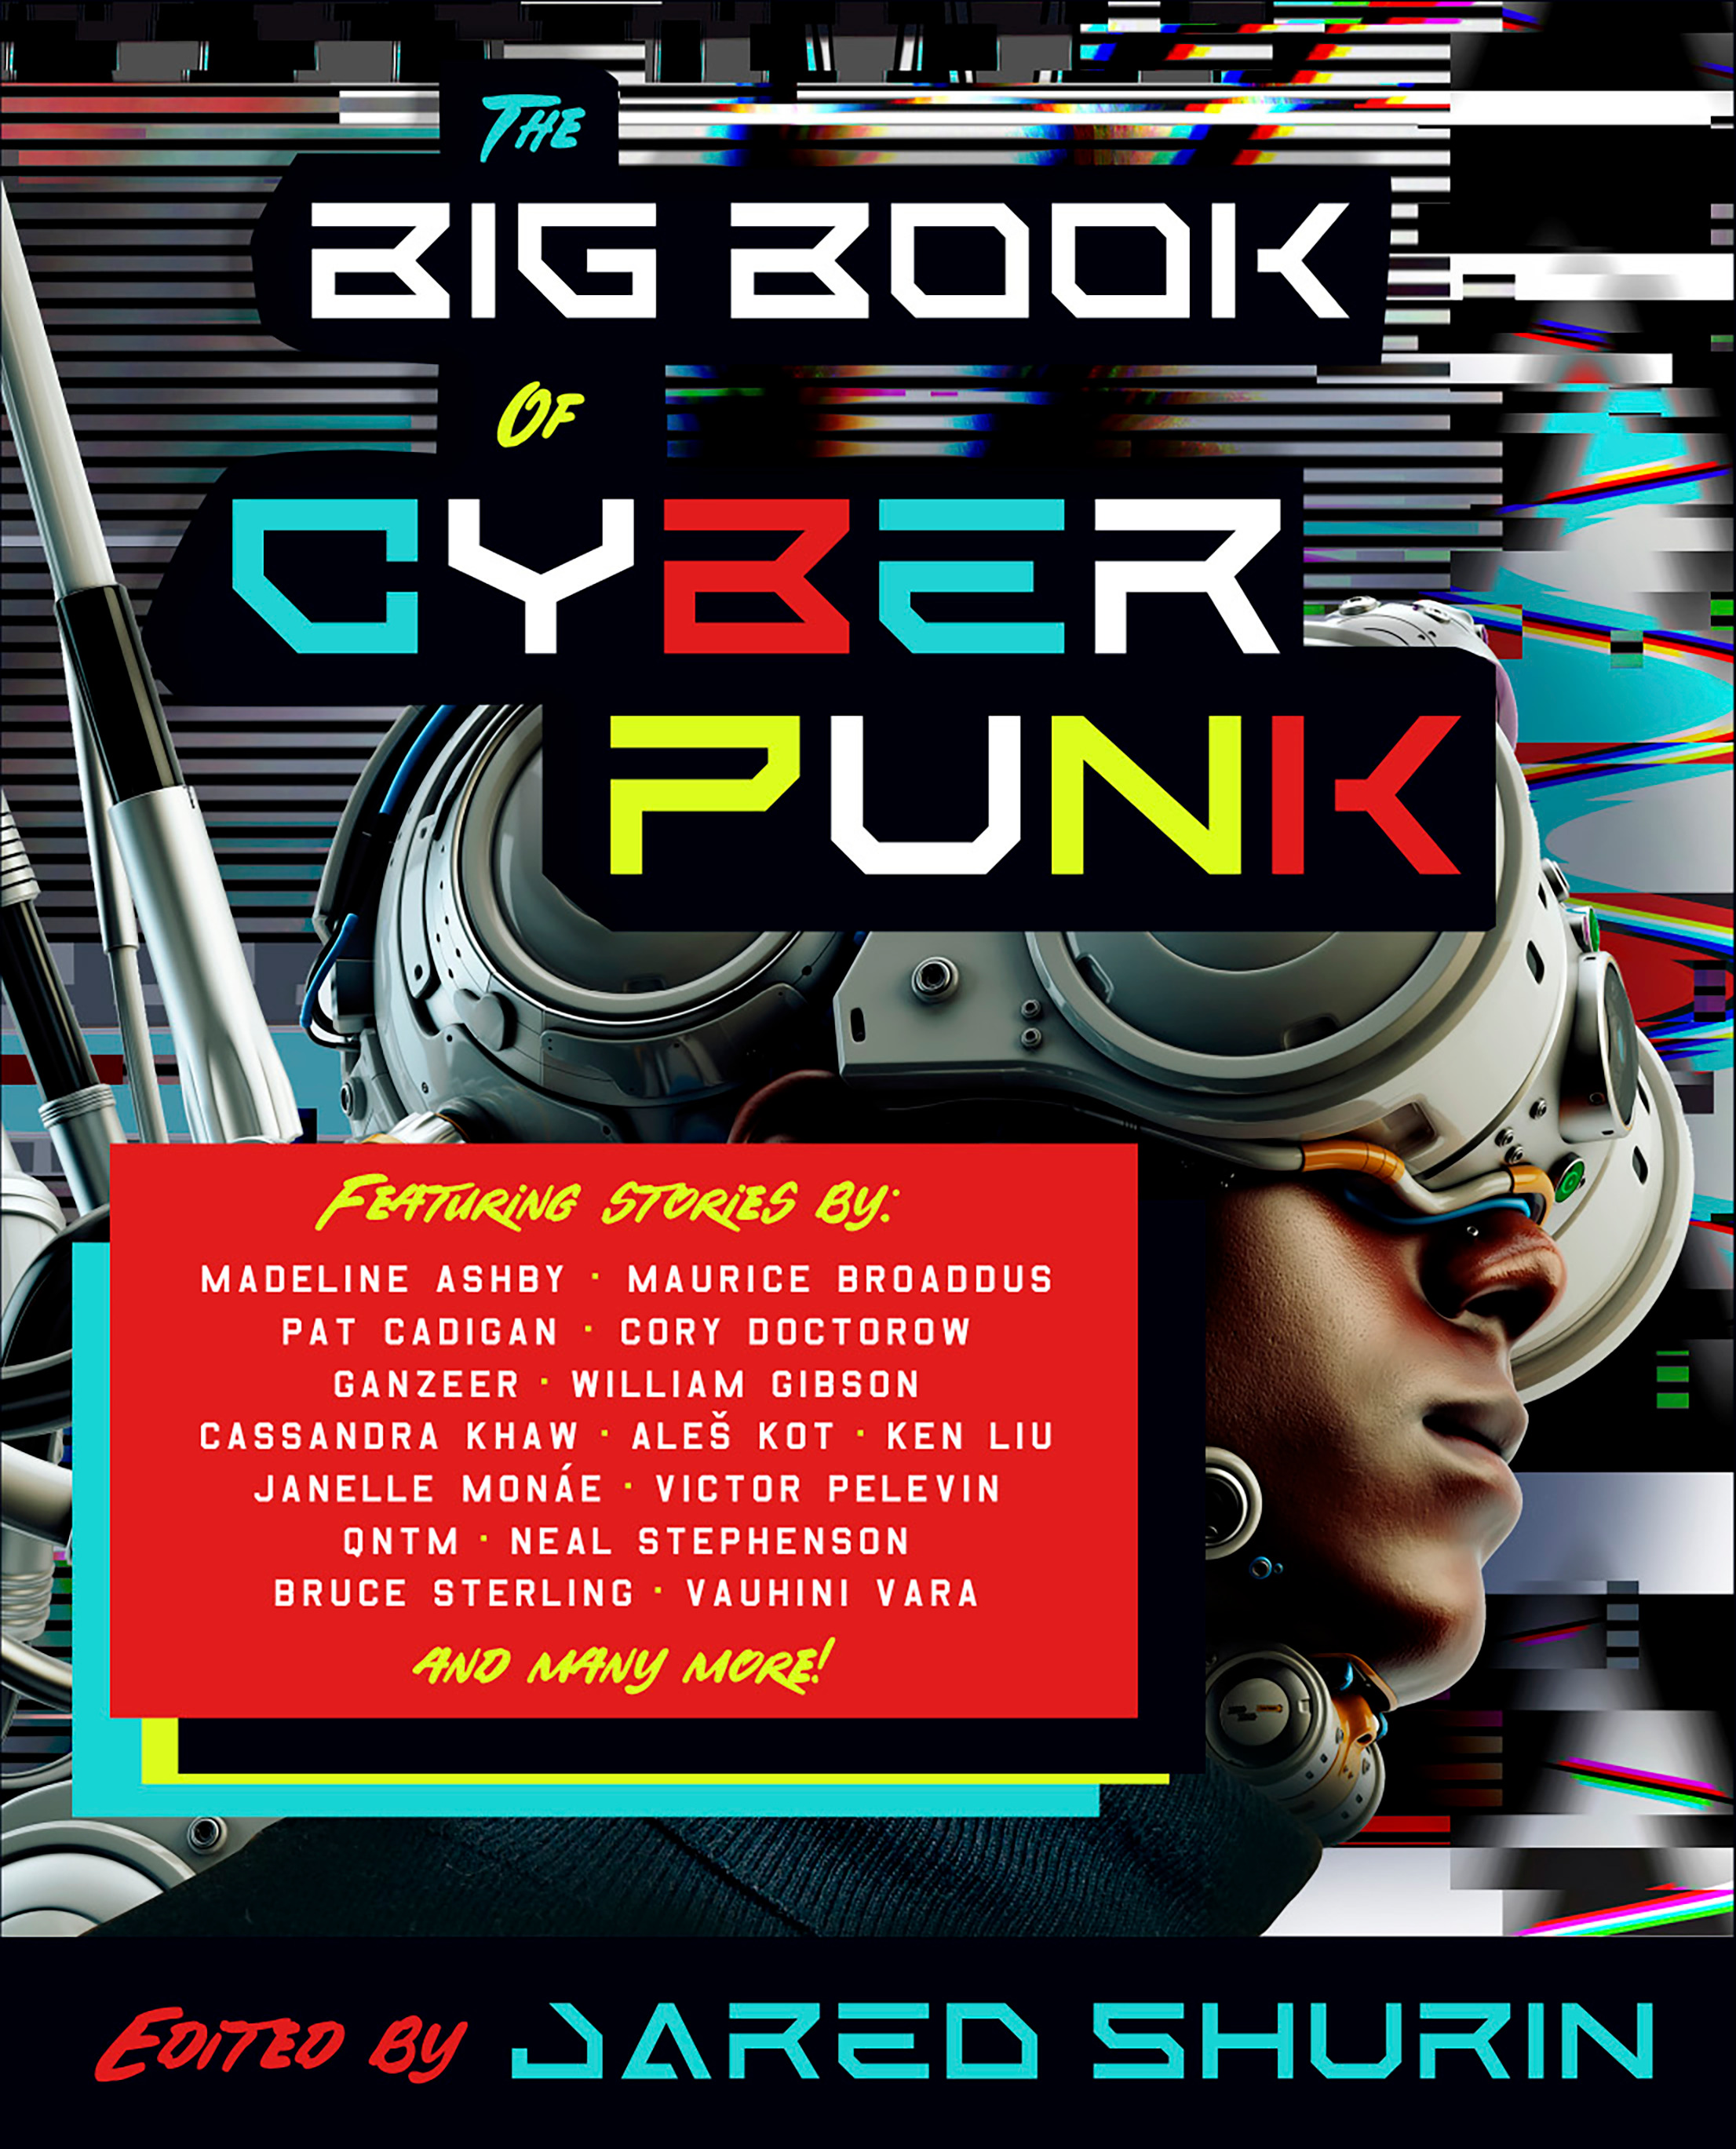 The Big Book of Cyberpunk | Shurin, Jared (Auteur)